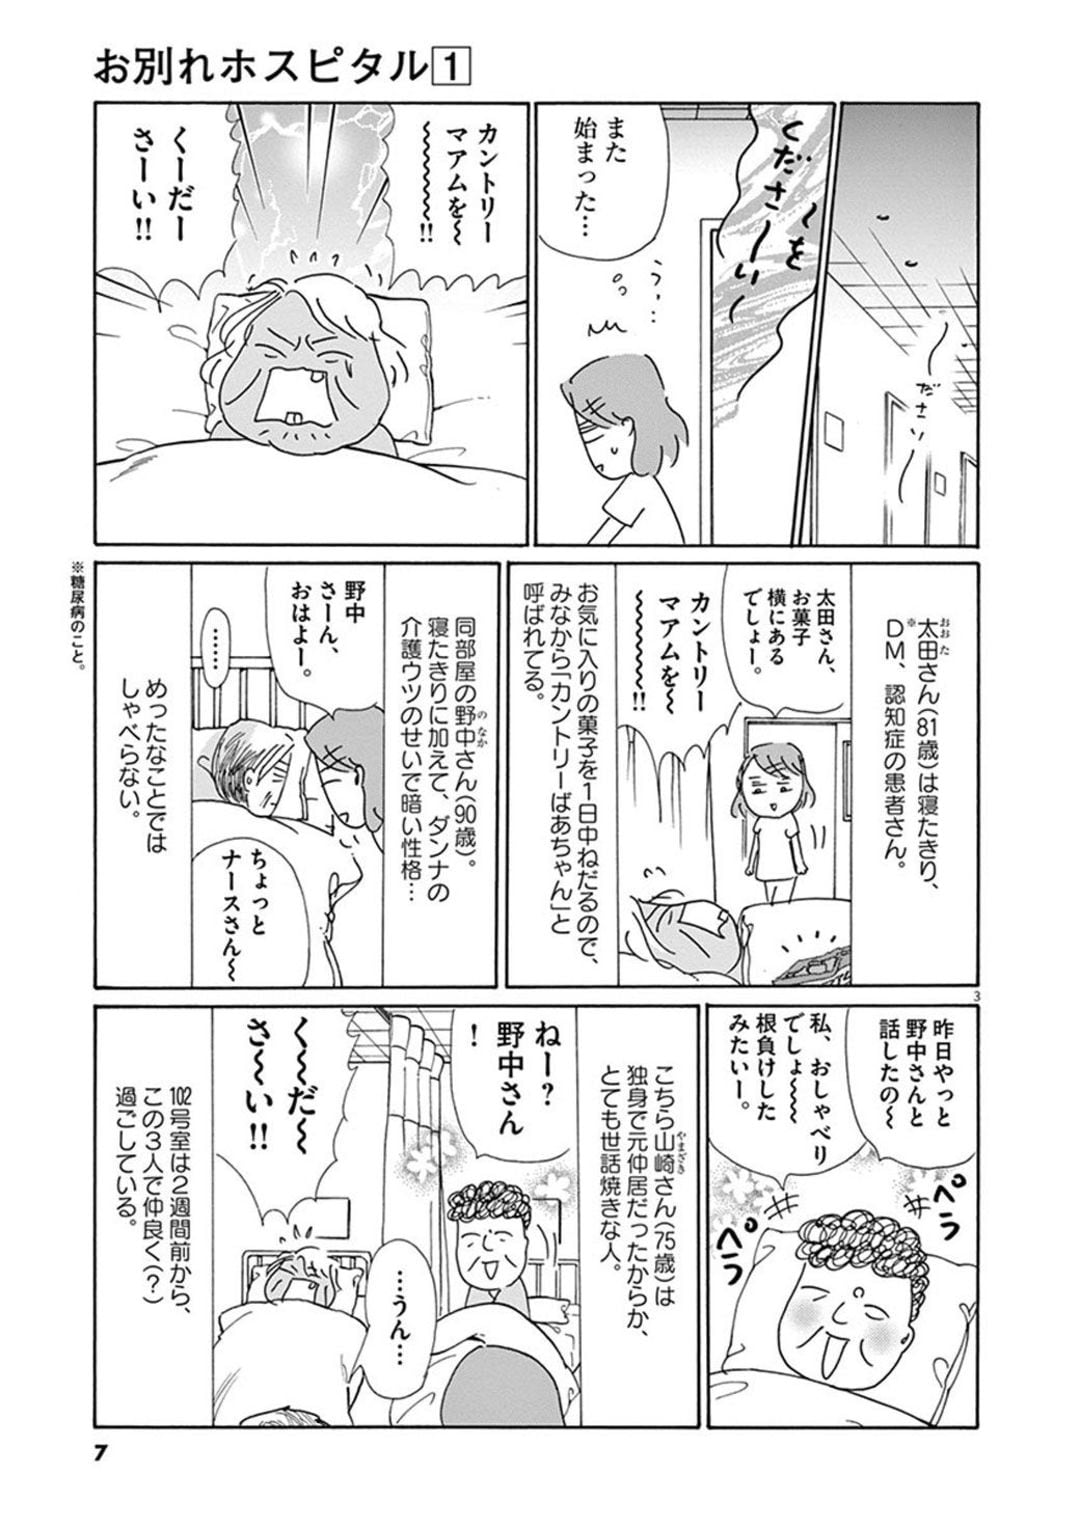 沖田 ばっか 漫画 世界漫画の物語